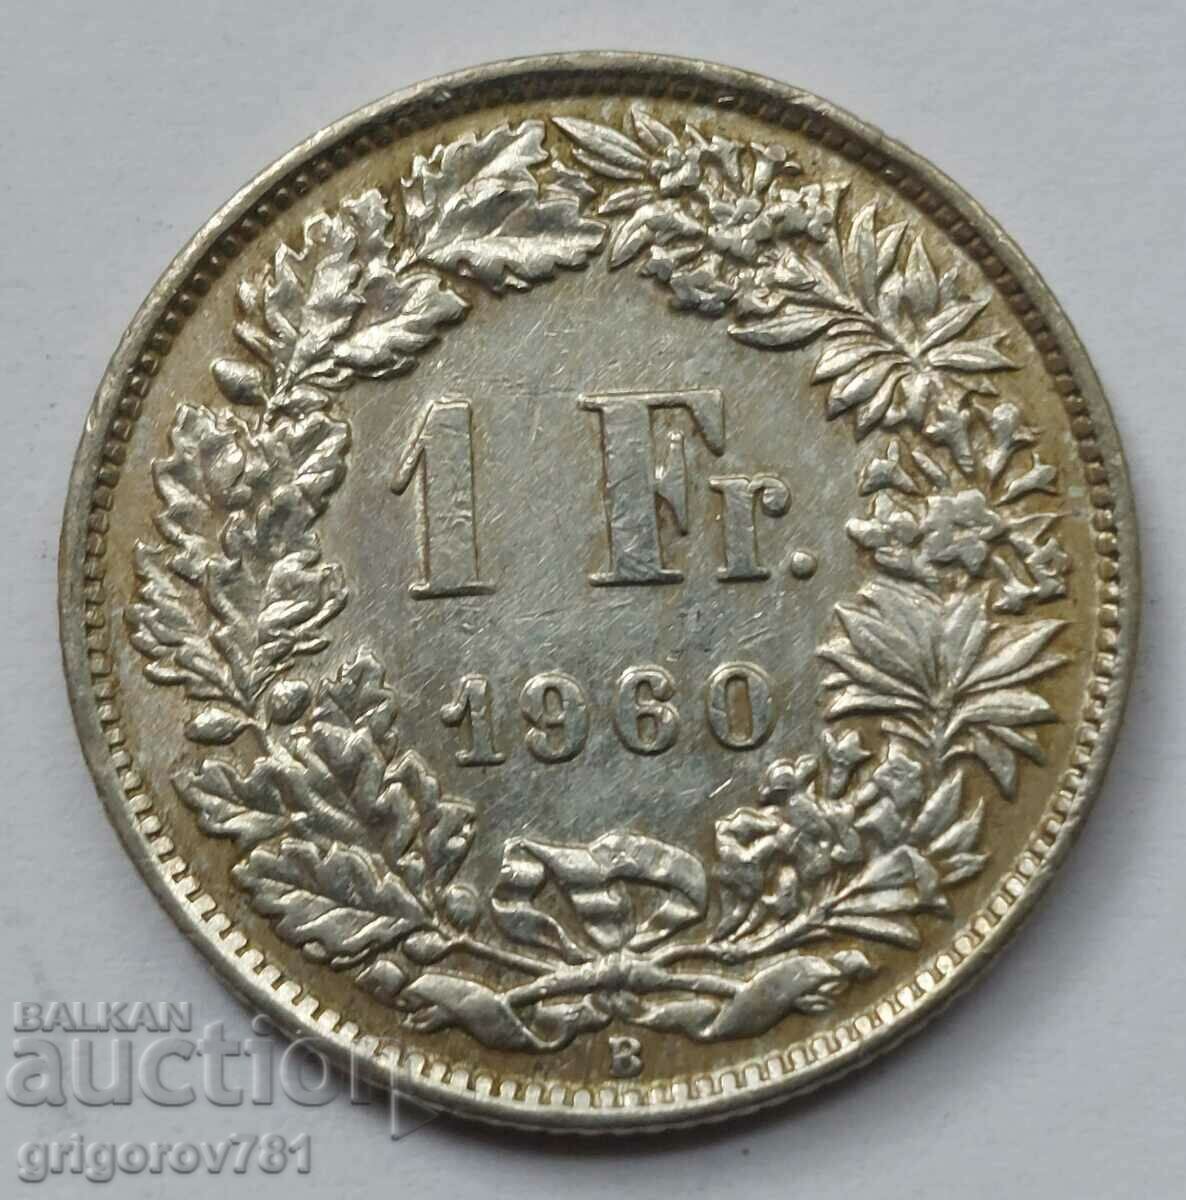 Ασημένιο 1 Φράγκο Ελβετία 1960 B - Ασημένιο νόμισμα #19